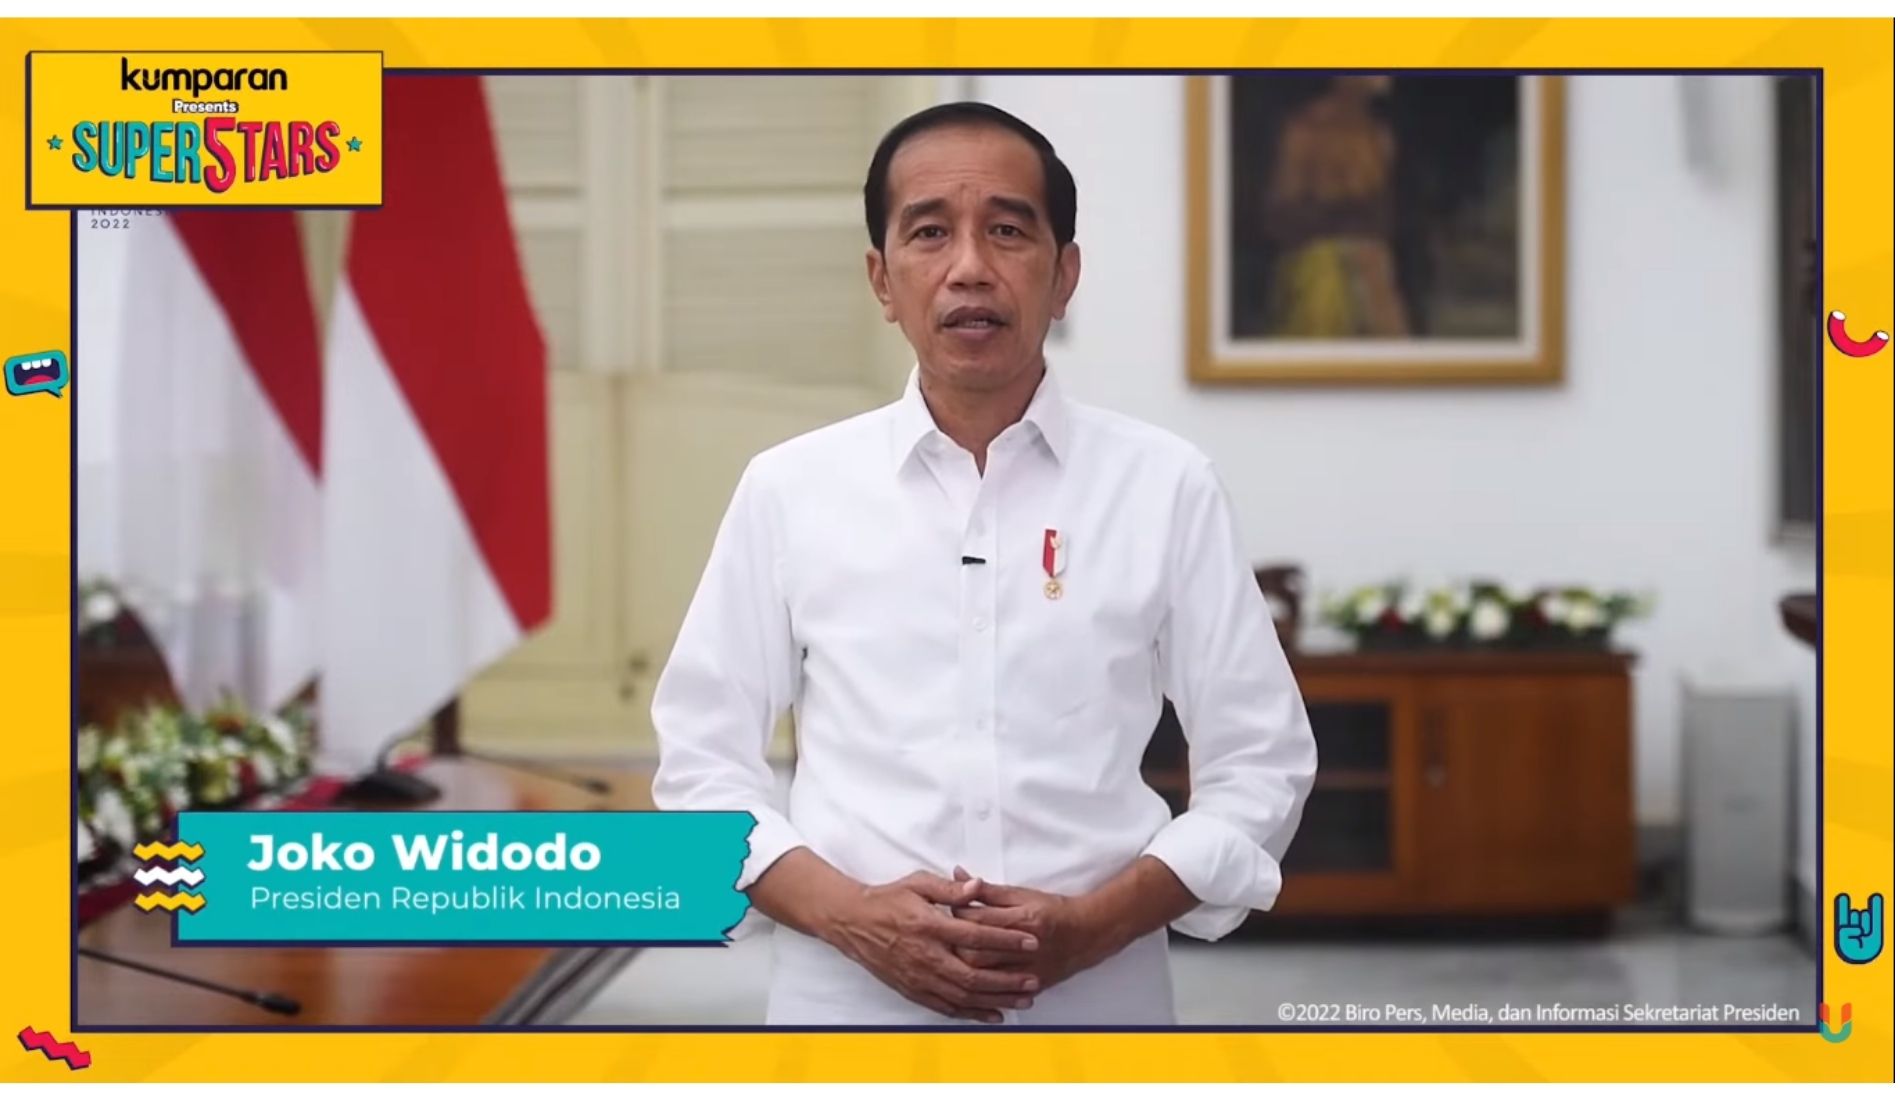 Presiden Republik Indonesia Joko Widodo dalam kumparan’s 5th Anniversary: Super5tars